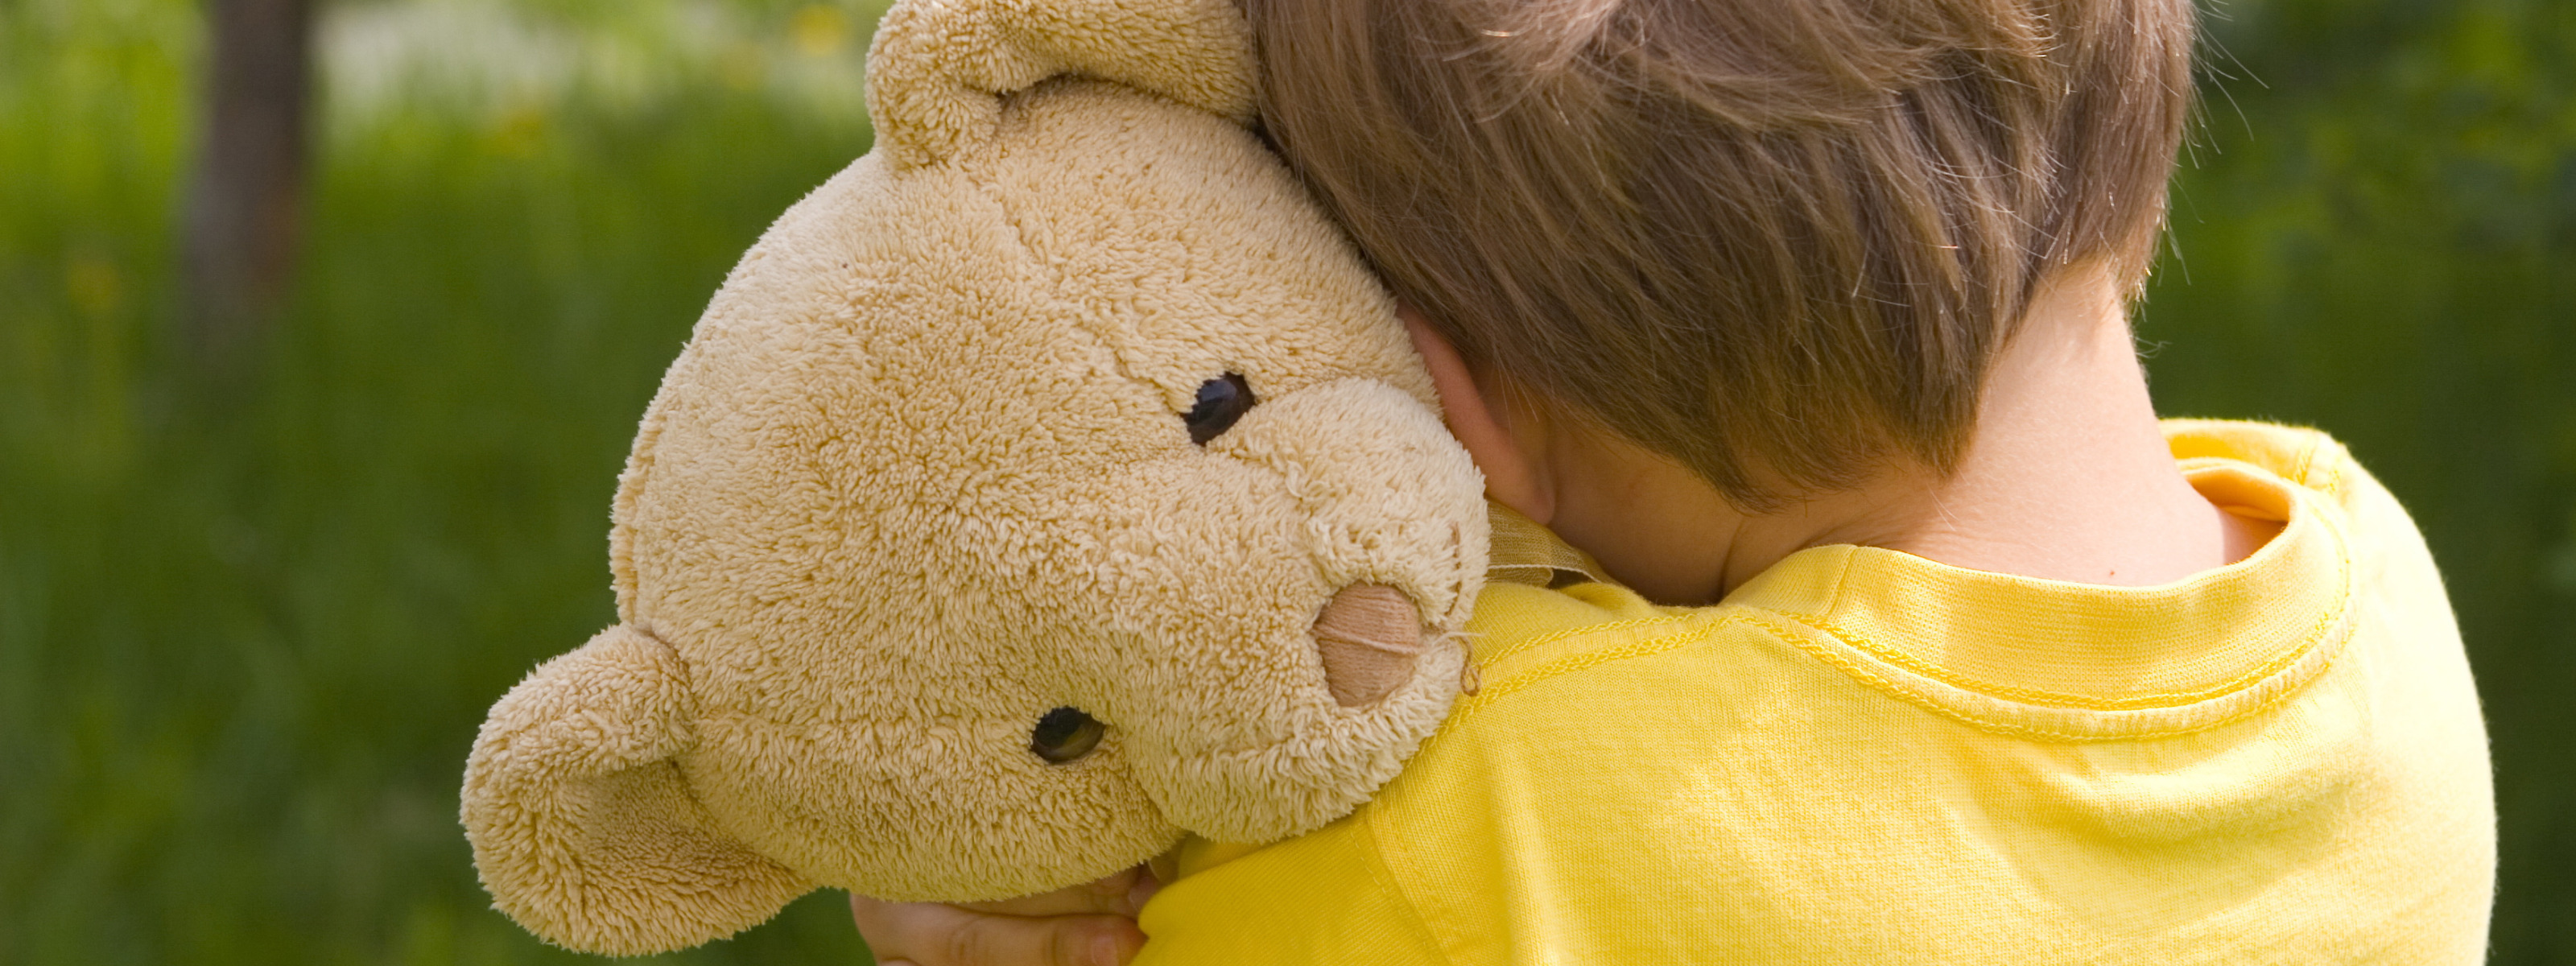 Лицо на попечении которого находится. Ребенок обнимает игрушку. Мягкие игрушки для детей. Ребенок обнимает плюшевого медведя. Мишка для детей.